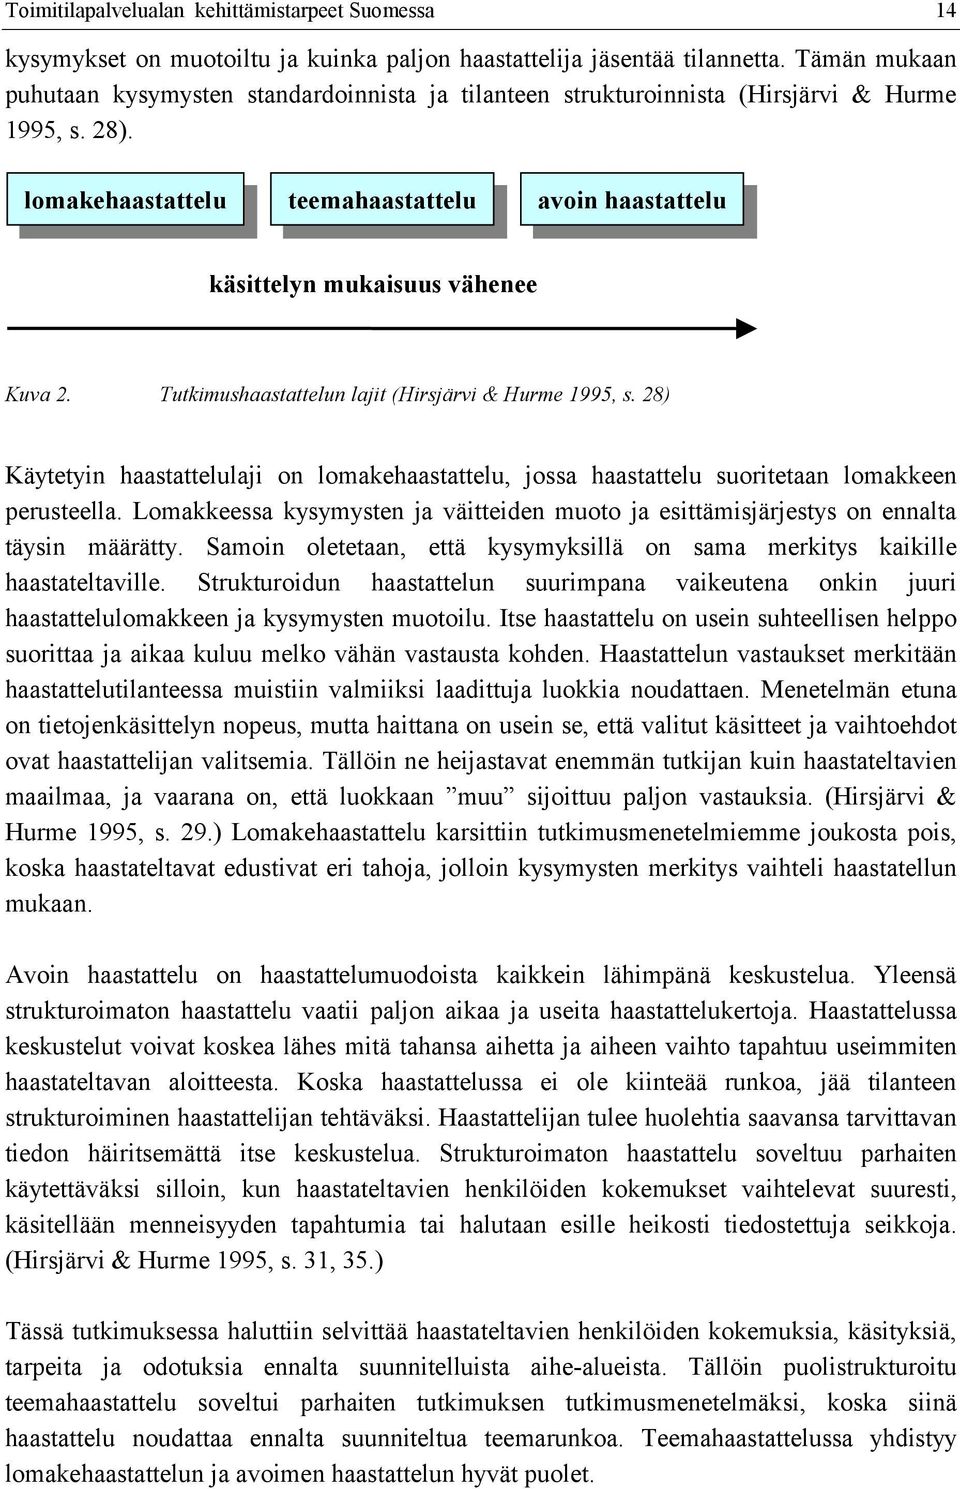 lomakehaastattelu lomakehaastattelu teemahaastattelu teemahaastattelu avoin avoin haastattelu haastattelu käsittelyn mukaisuus vähenee Kuva 2. Tutkimushaastattelun lajit (Hirsjärvi & Hurme 1995, s.